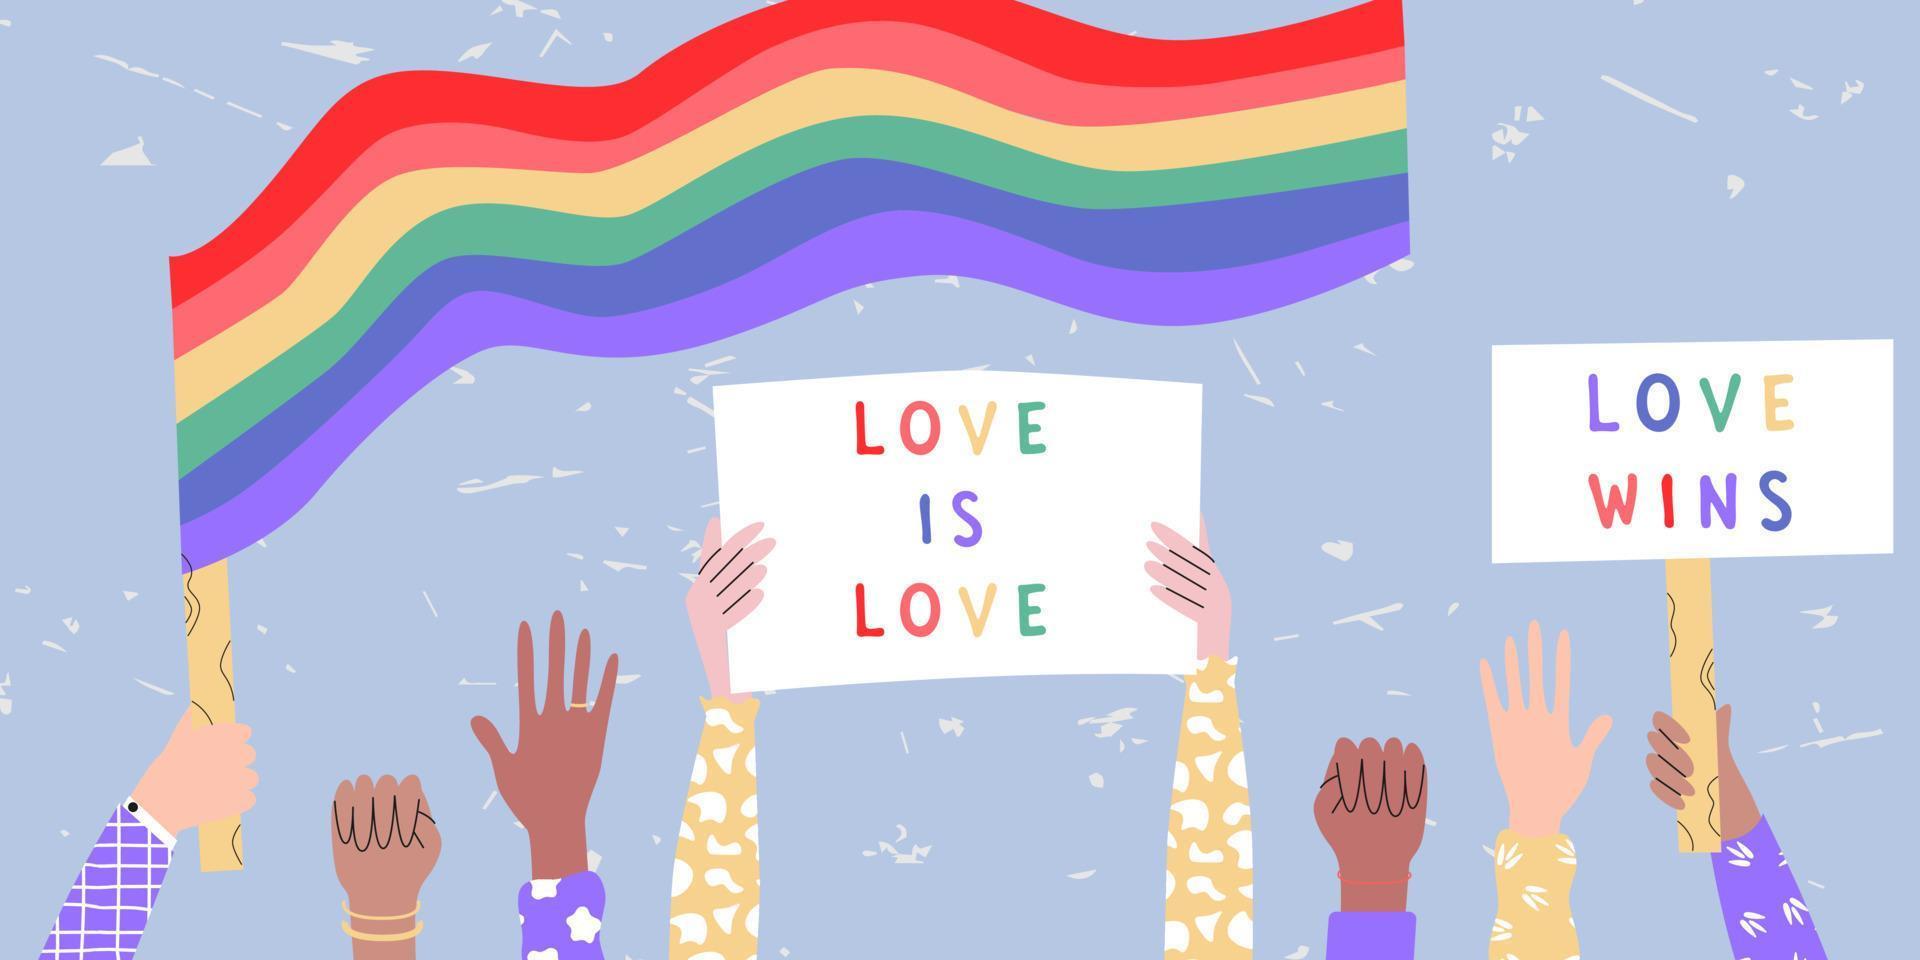 carteles de personas con bandera transgénero arcoíris lgbt, mes del orgullo, desfile contra la violencia, discriminación, derechos humanos. vector